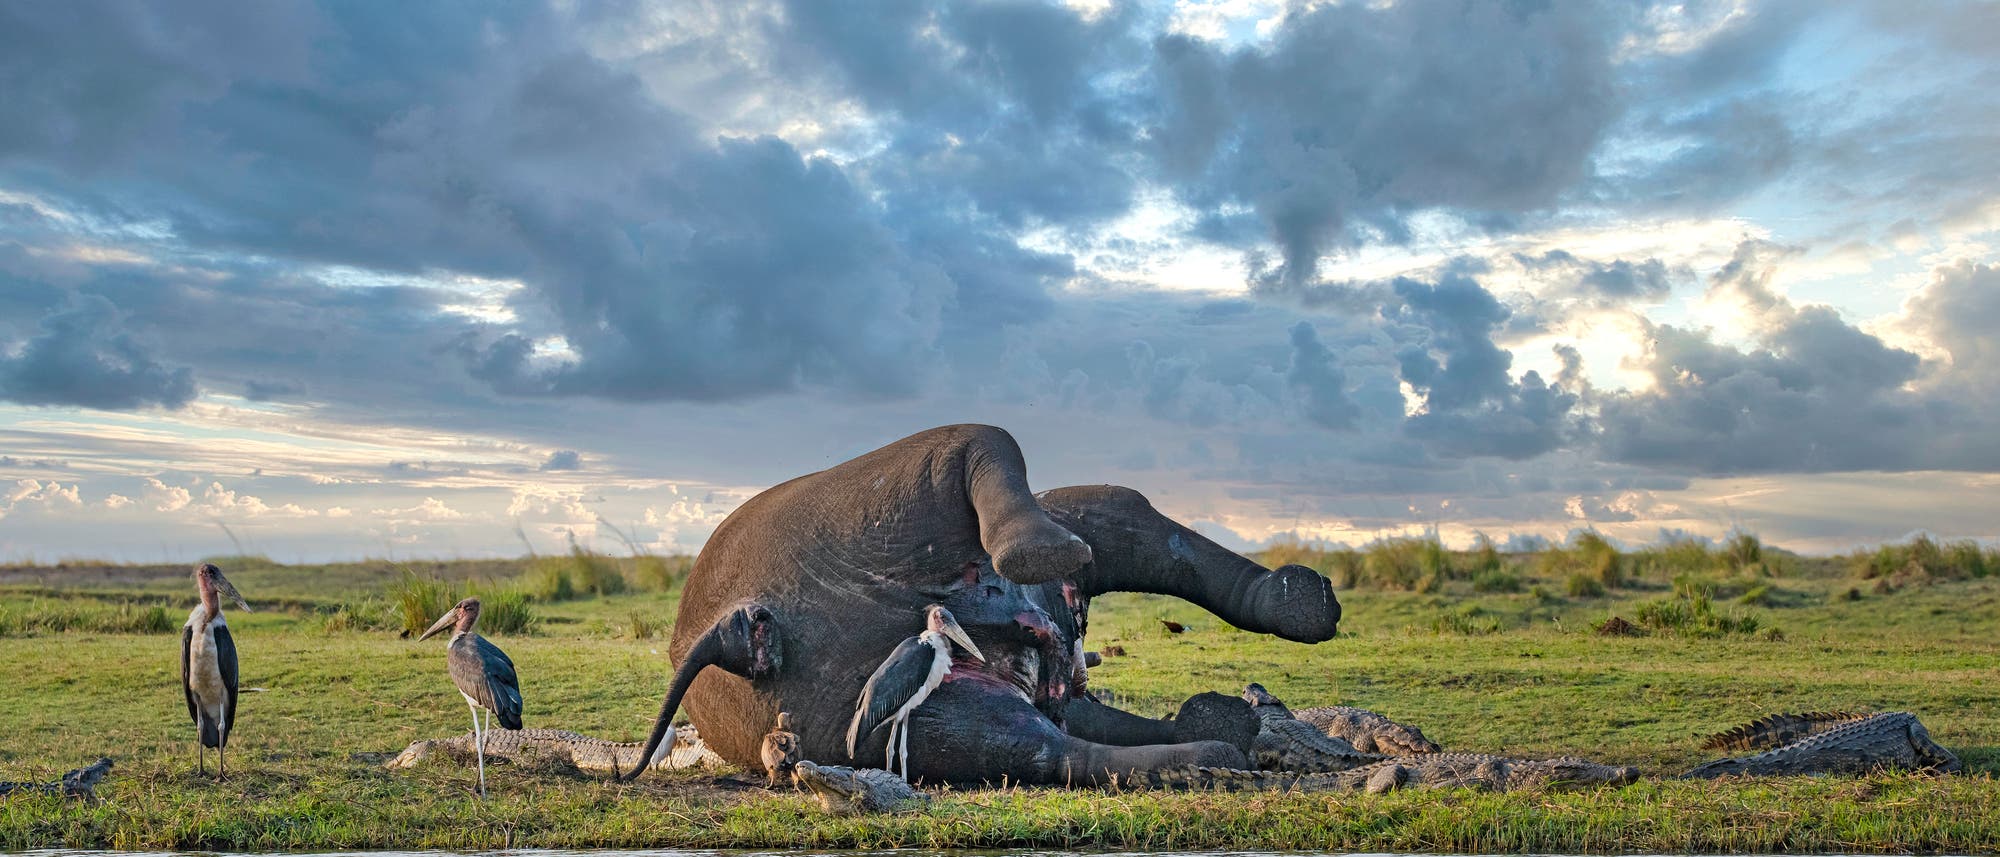 Ein toter Elefant liegt an einem Flussufer in Botswana, seine Hinterseite ist zu sehen. Aasfresser wie Marabus, Geier und Krokodile fressen am Kadaver, der Himmel ist bewölkt